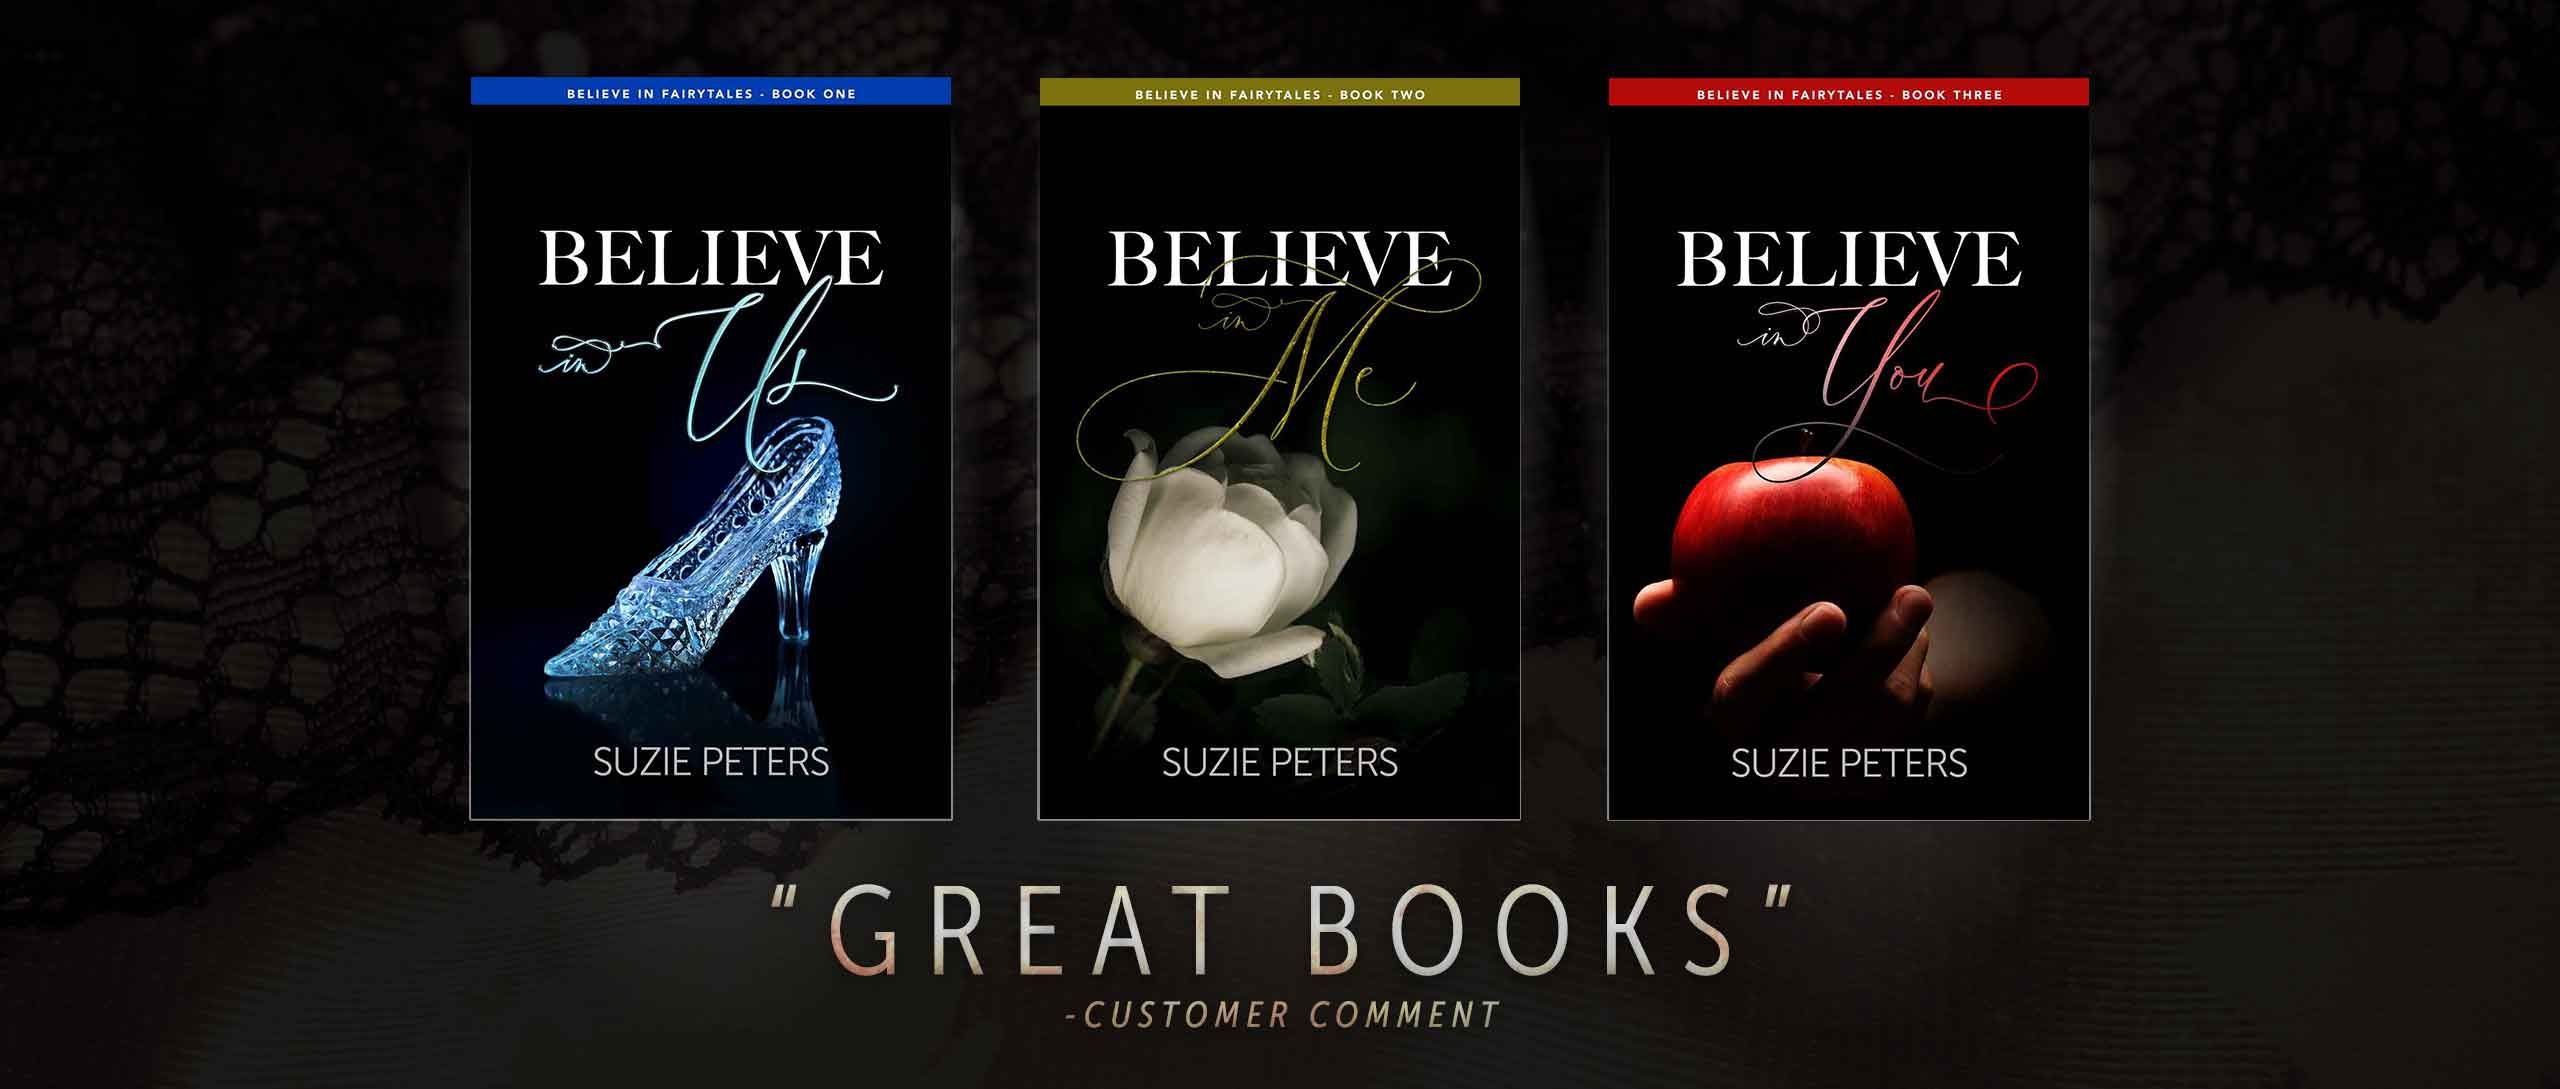 Believe in Fairytales series slide